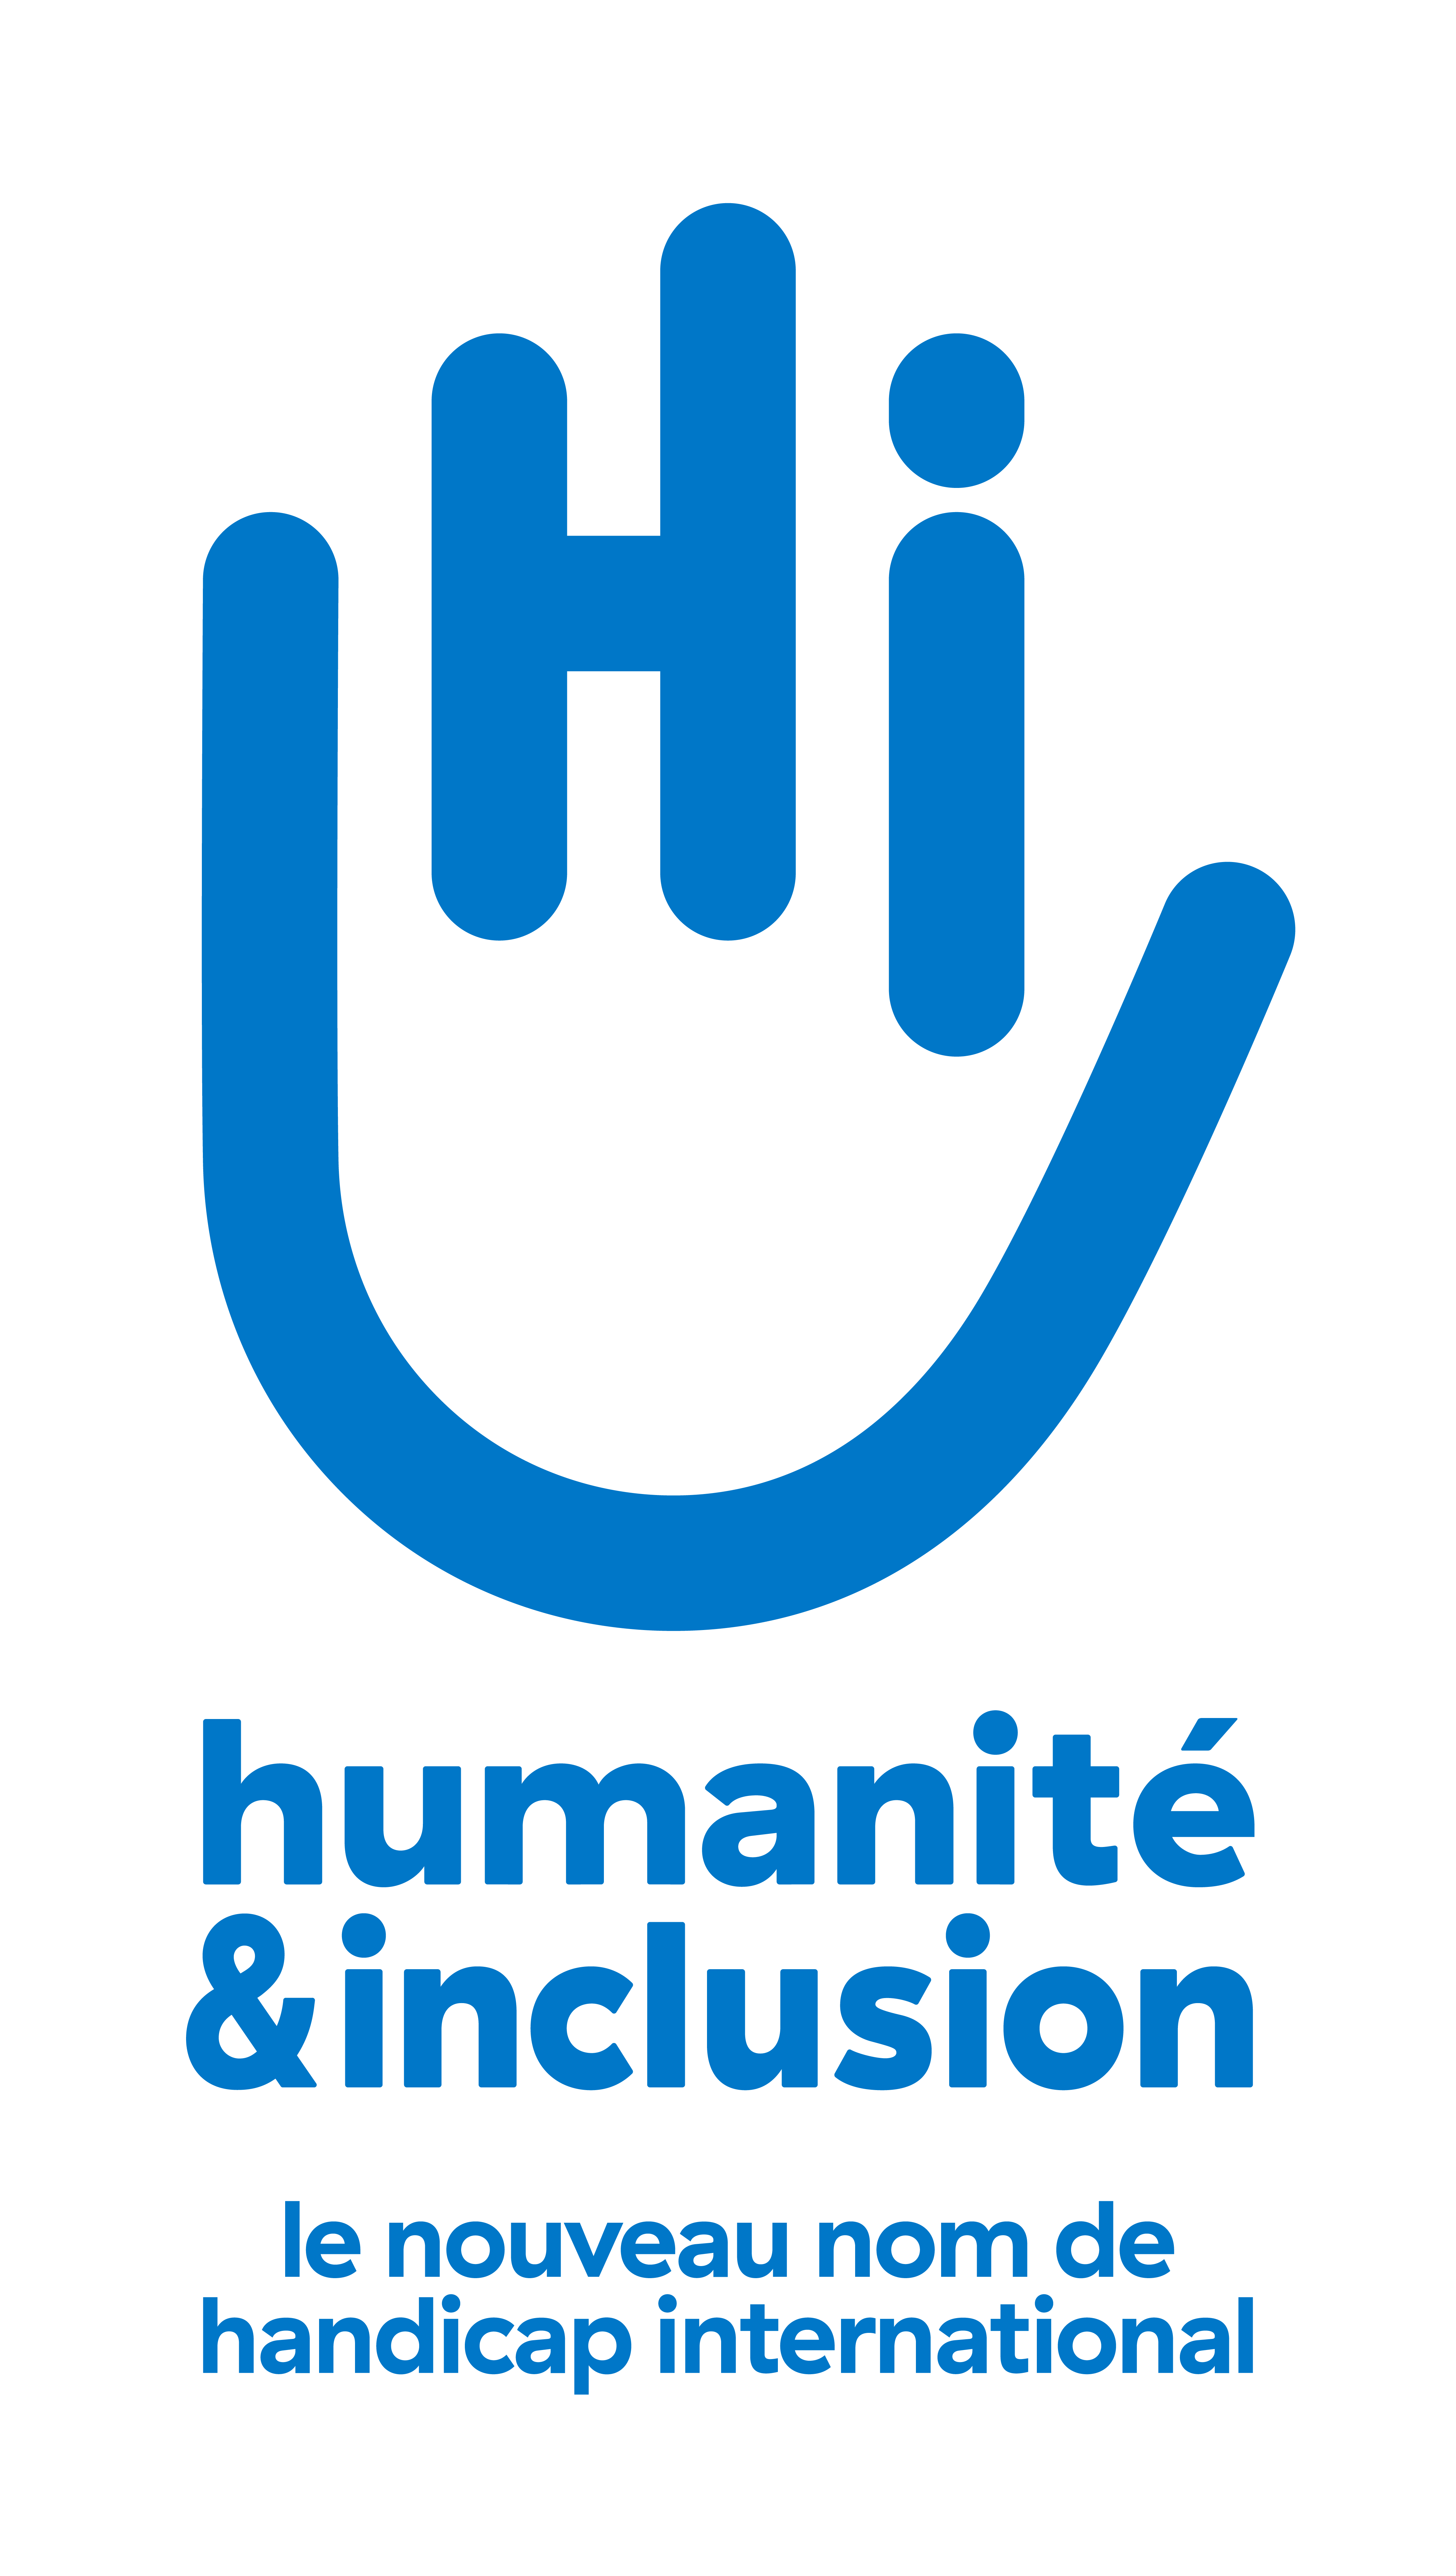 Humanité & inclusion (handicap international)